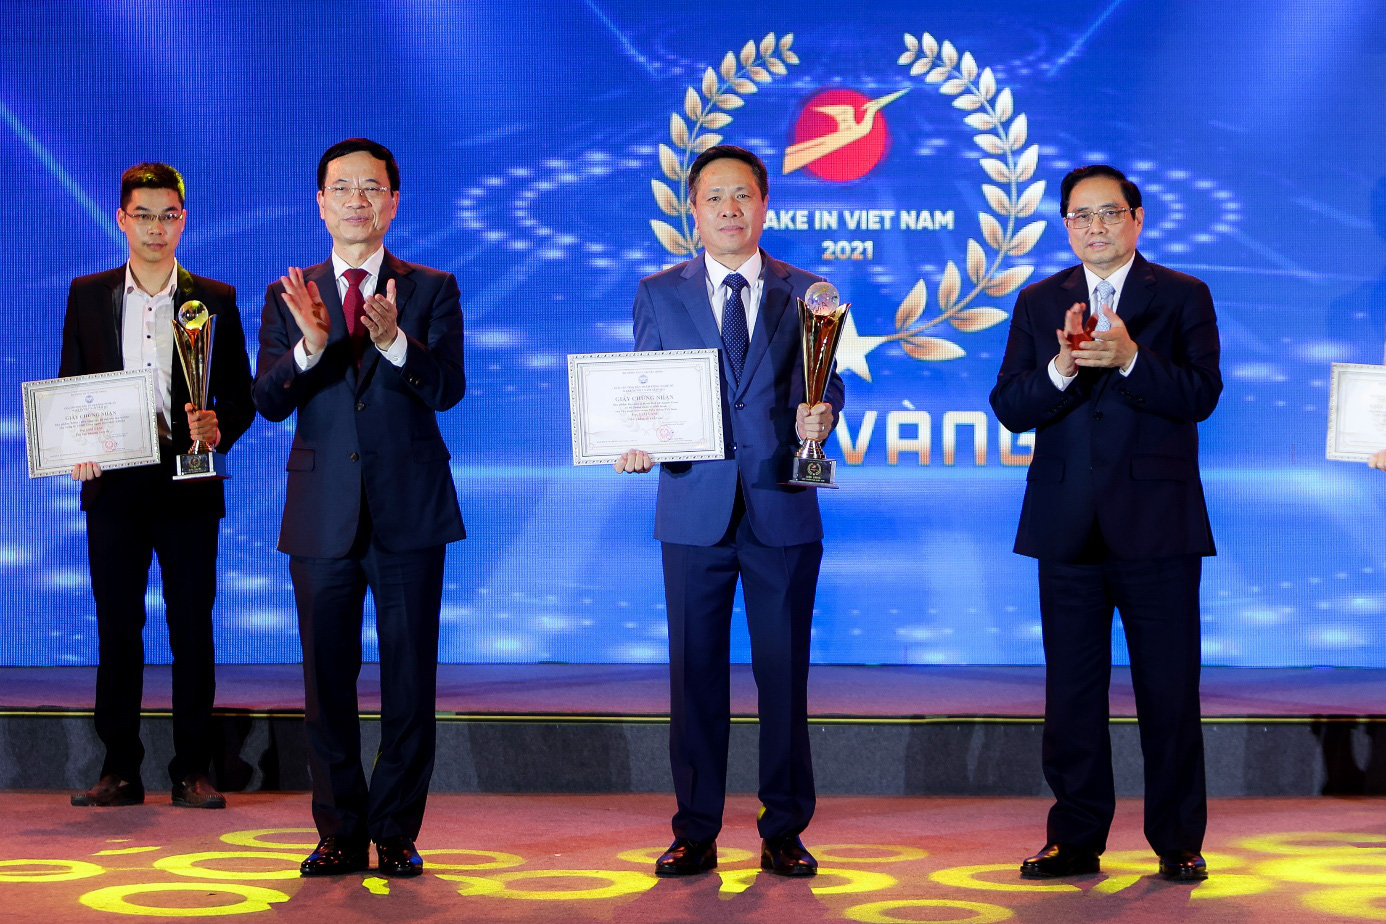 VNPT xuất sắc giành 1 giải Vàng và 1 giải Bạc của Make in Viet Nam 2021 [HOT]